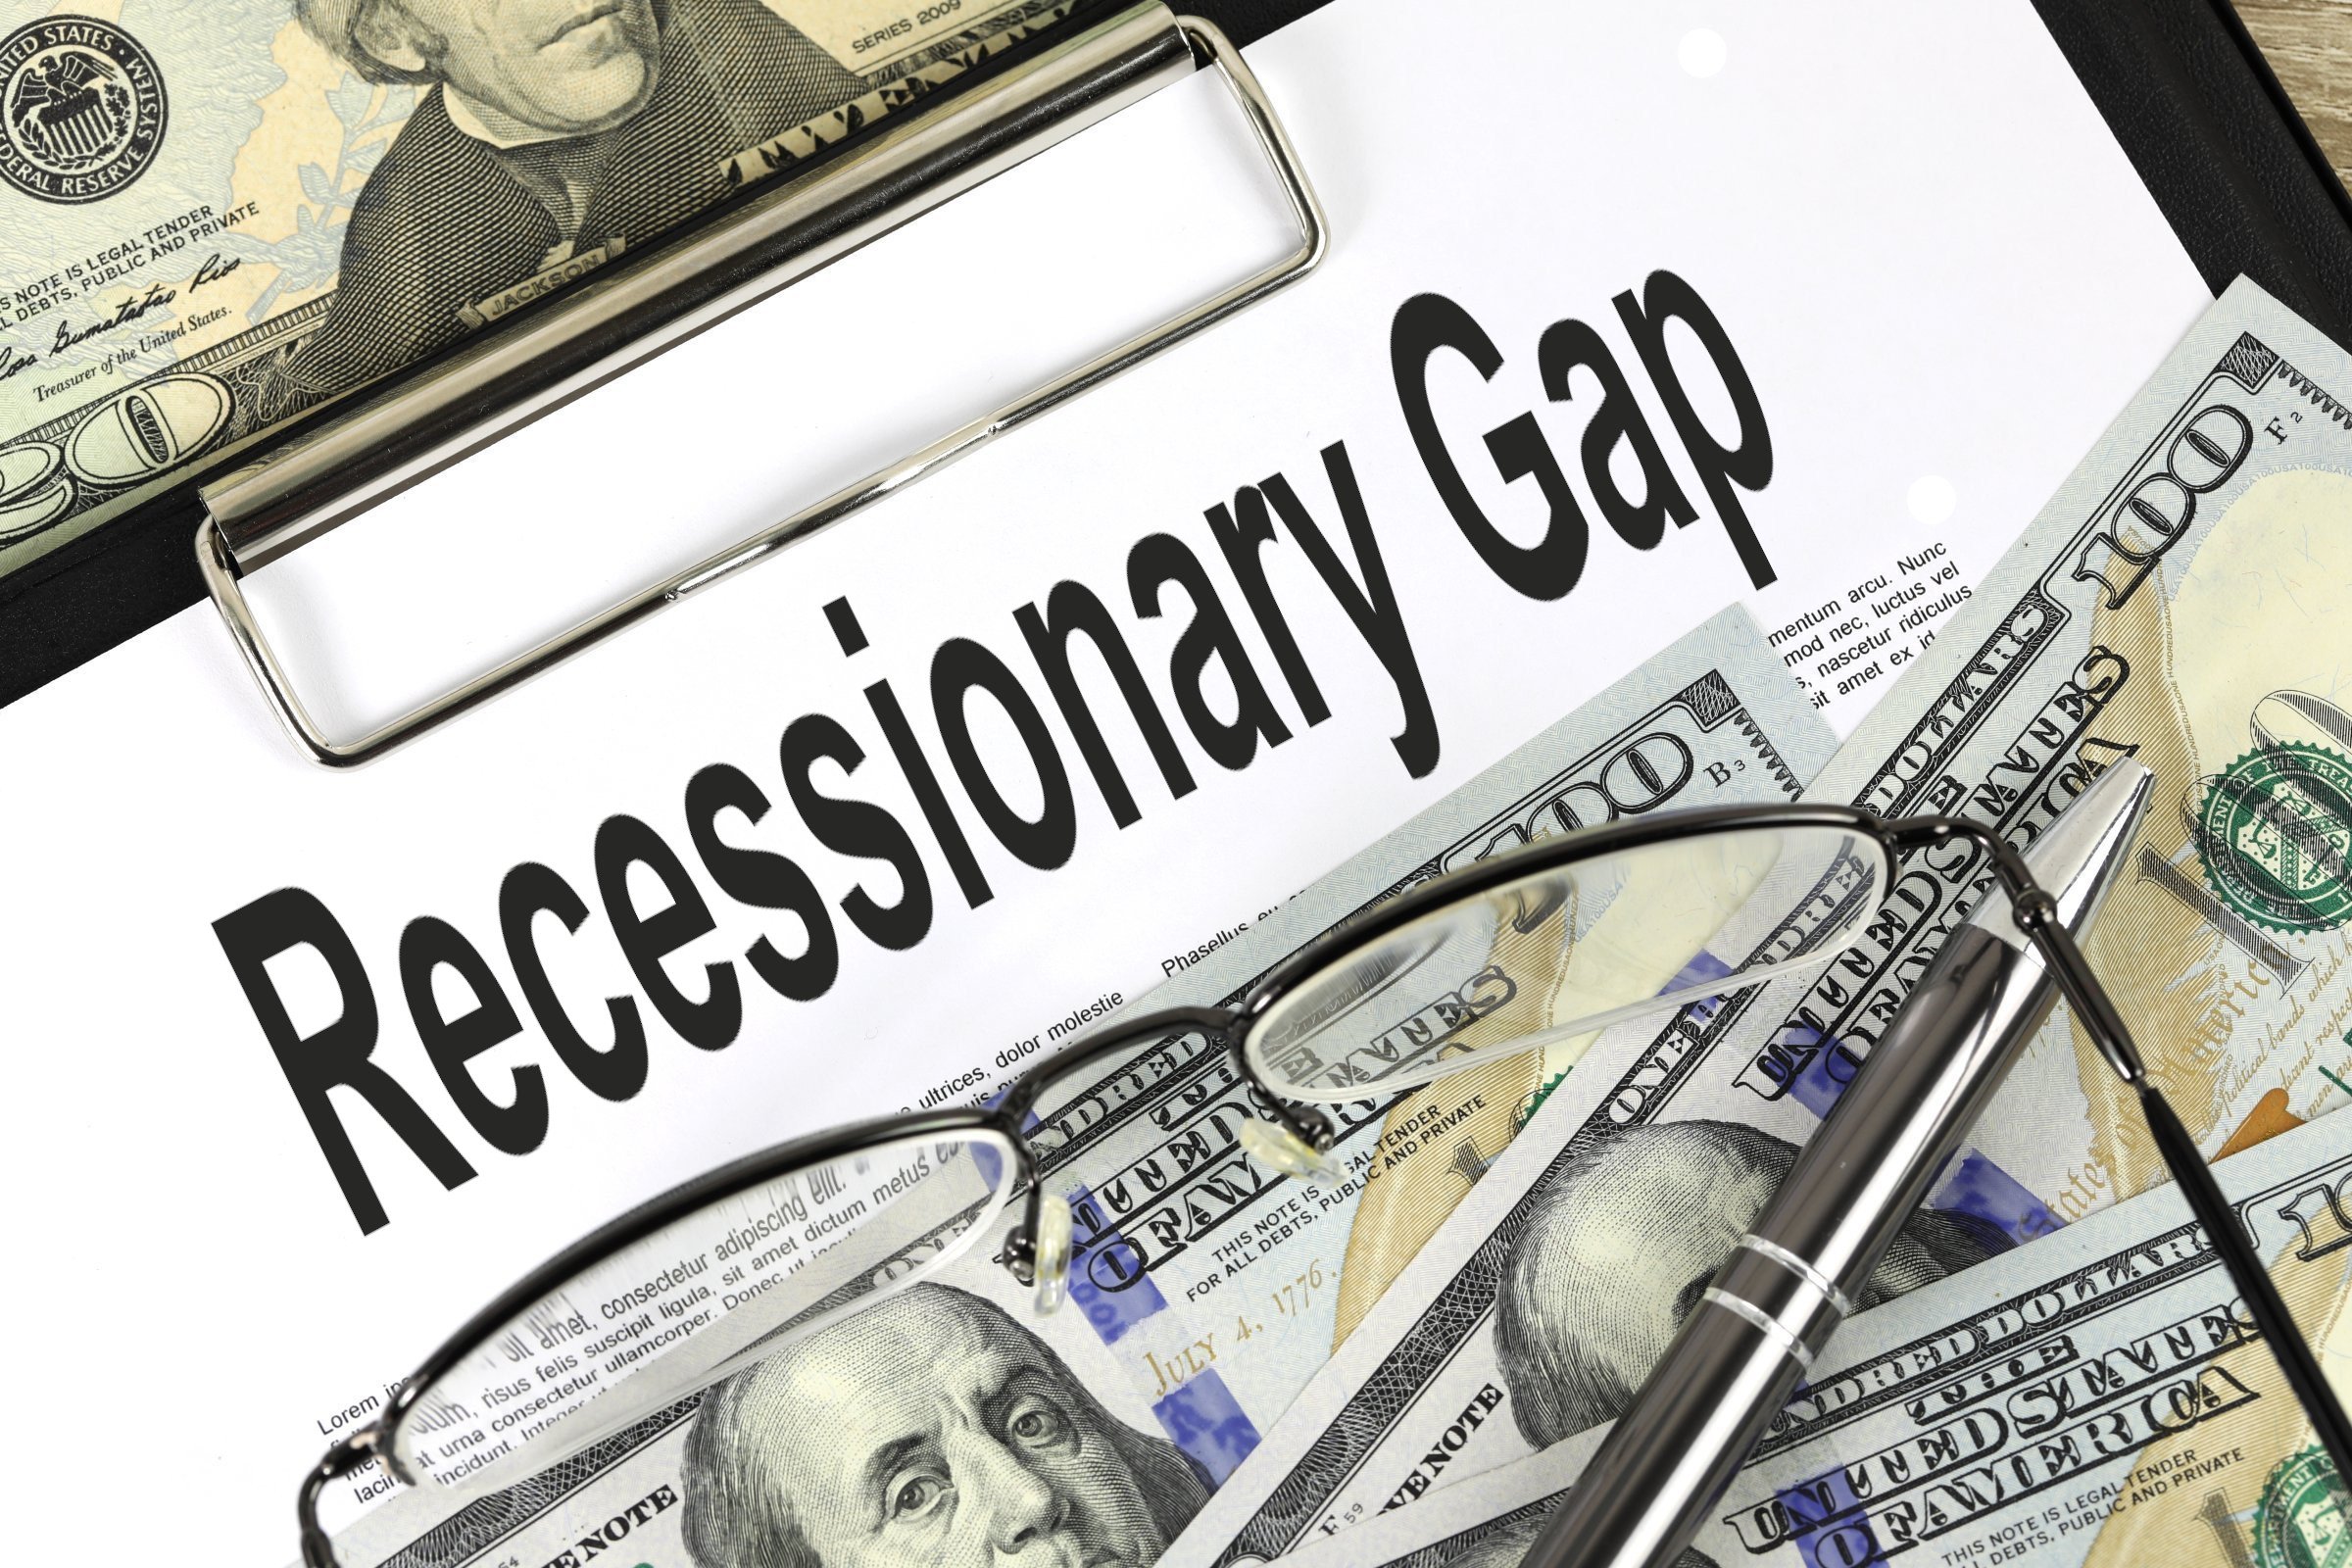 recessionary gap